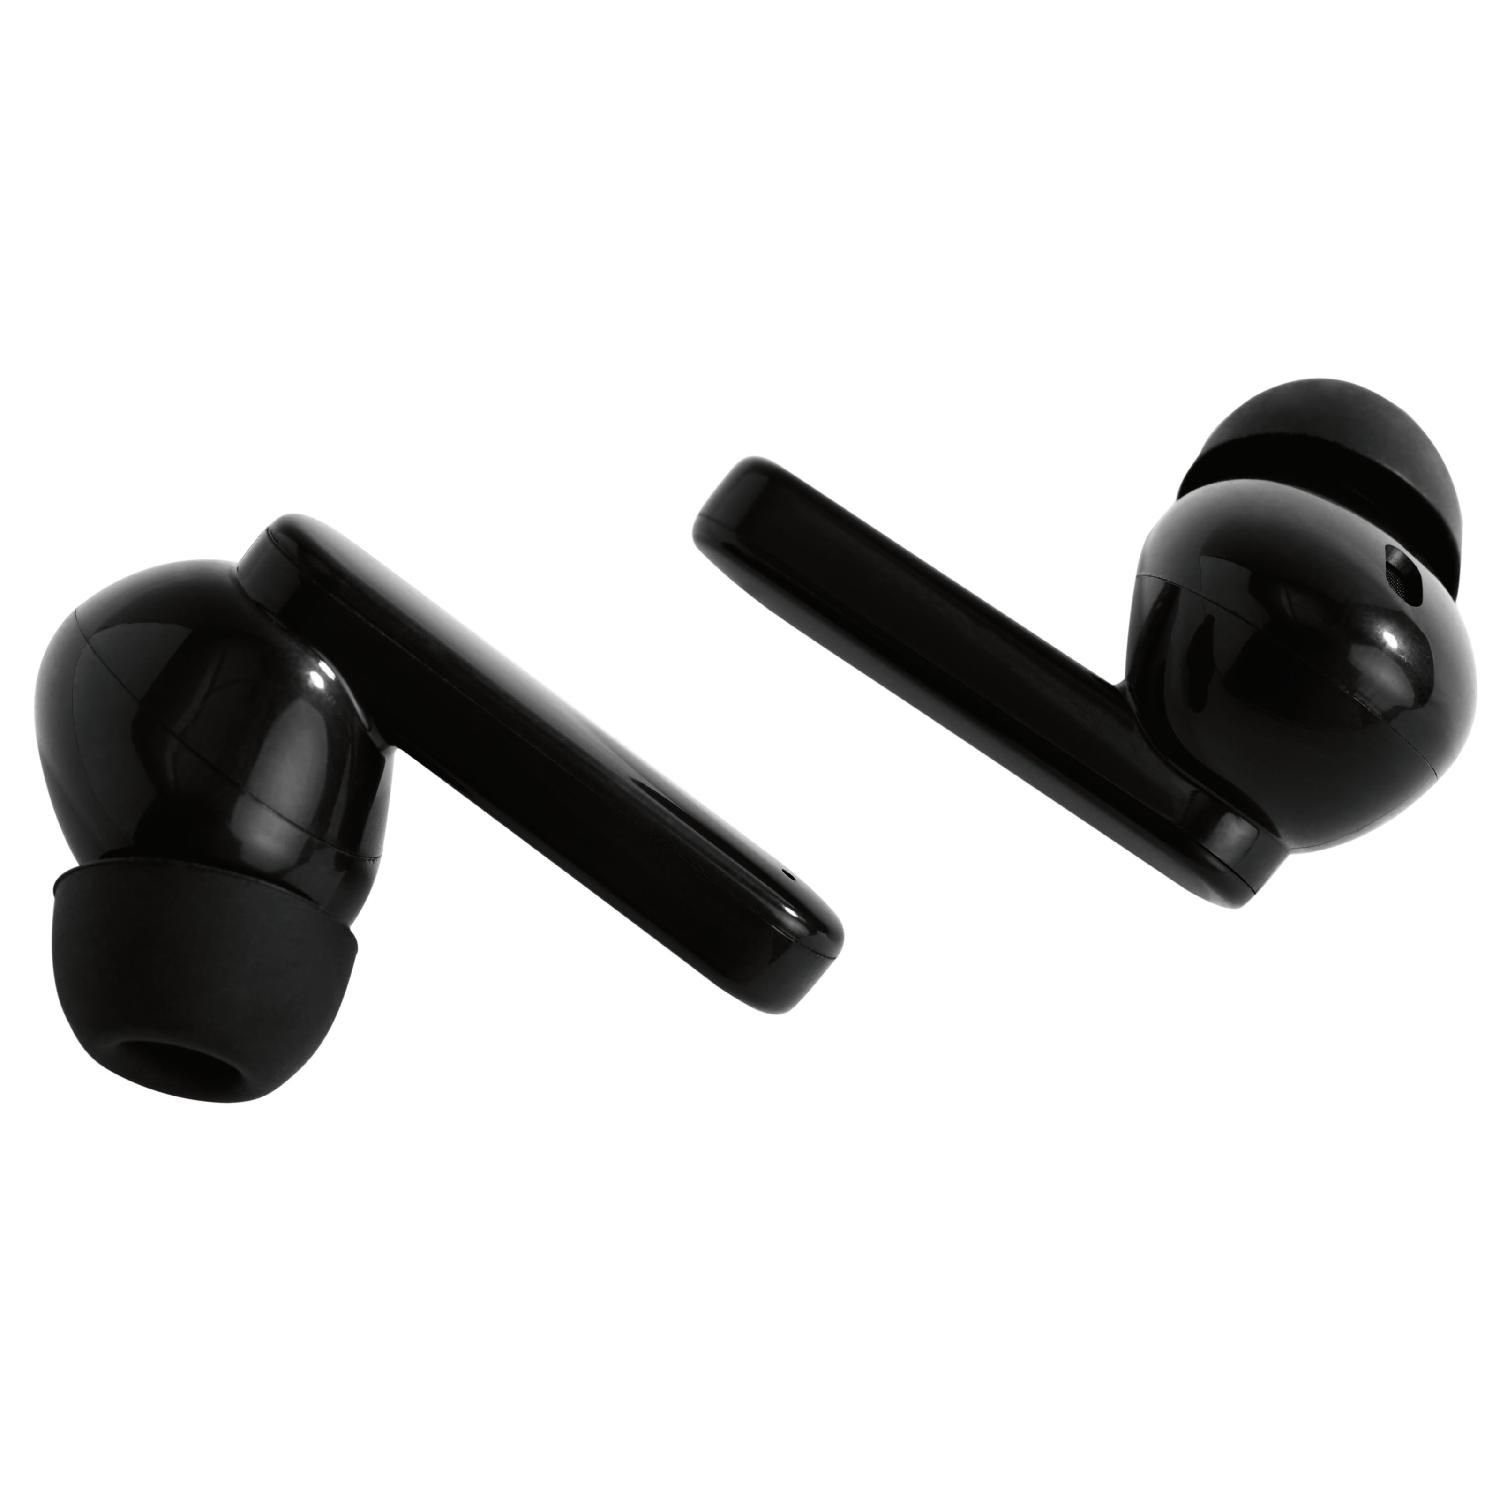 Bluetooth zu Std. Jahre 4 Kopfhörer (inkl. TWS-115 Kopfhörer STREETZ Gaming bis 5 In-Ear Herstellergarantie)